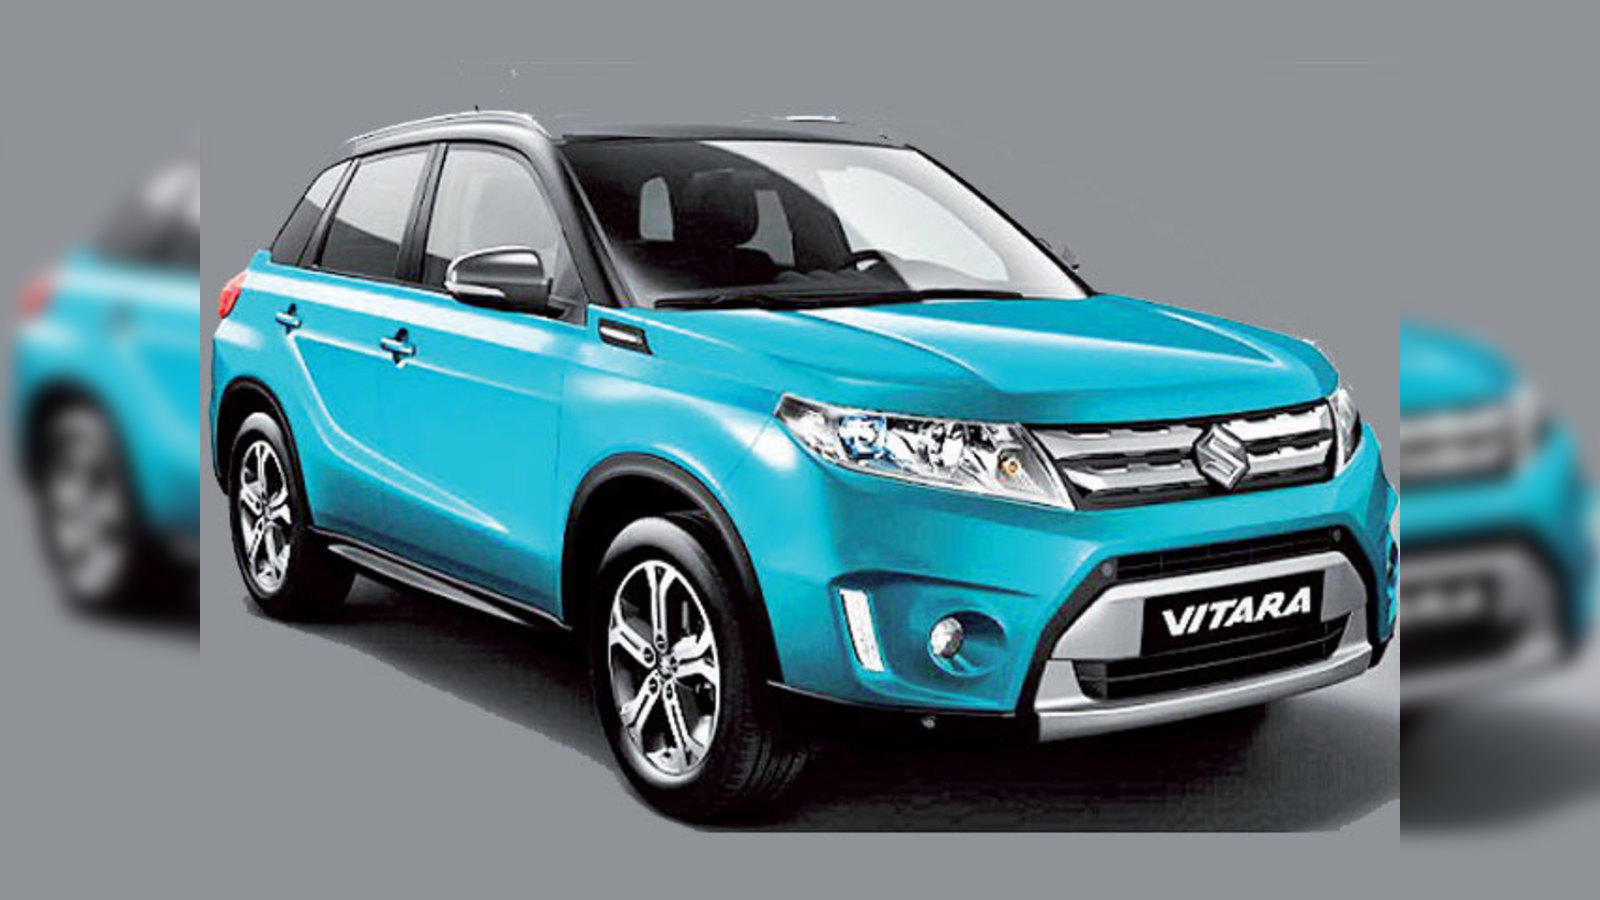 Made in India: Locally developed Maruti Suzuki's Vitara Brezza to